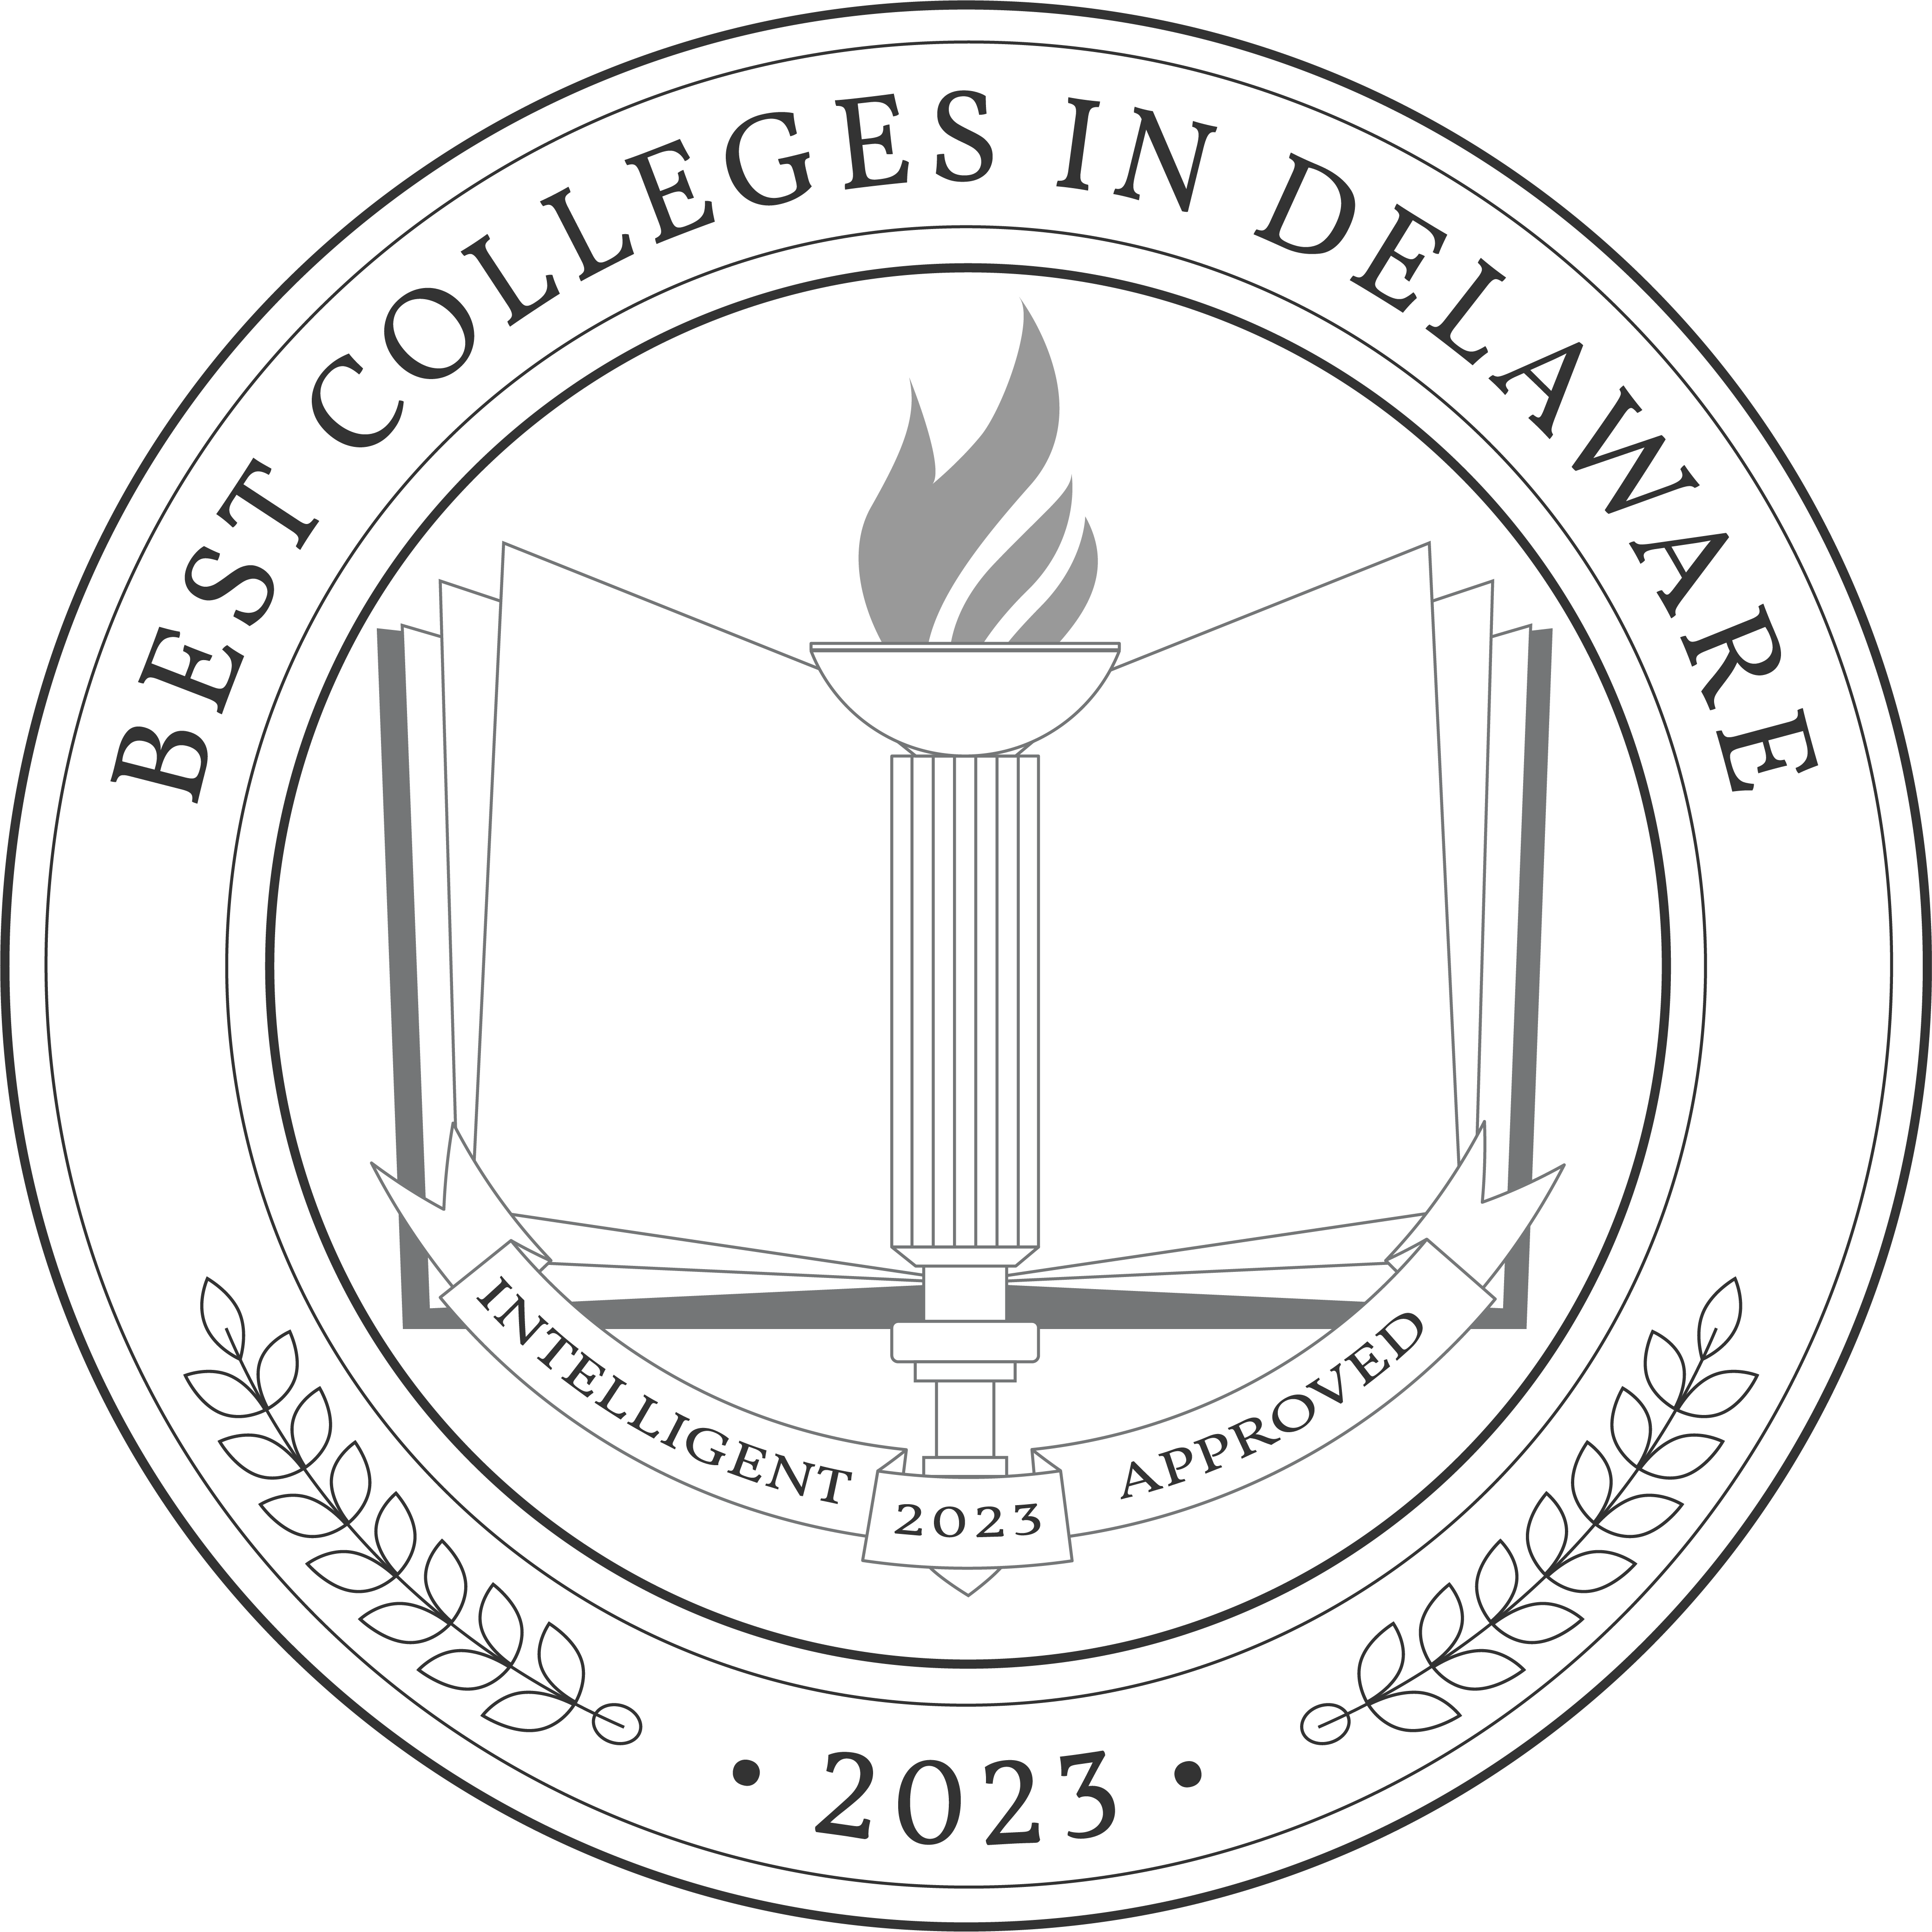 Best Colleges in Delaware 2023 Badge